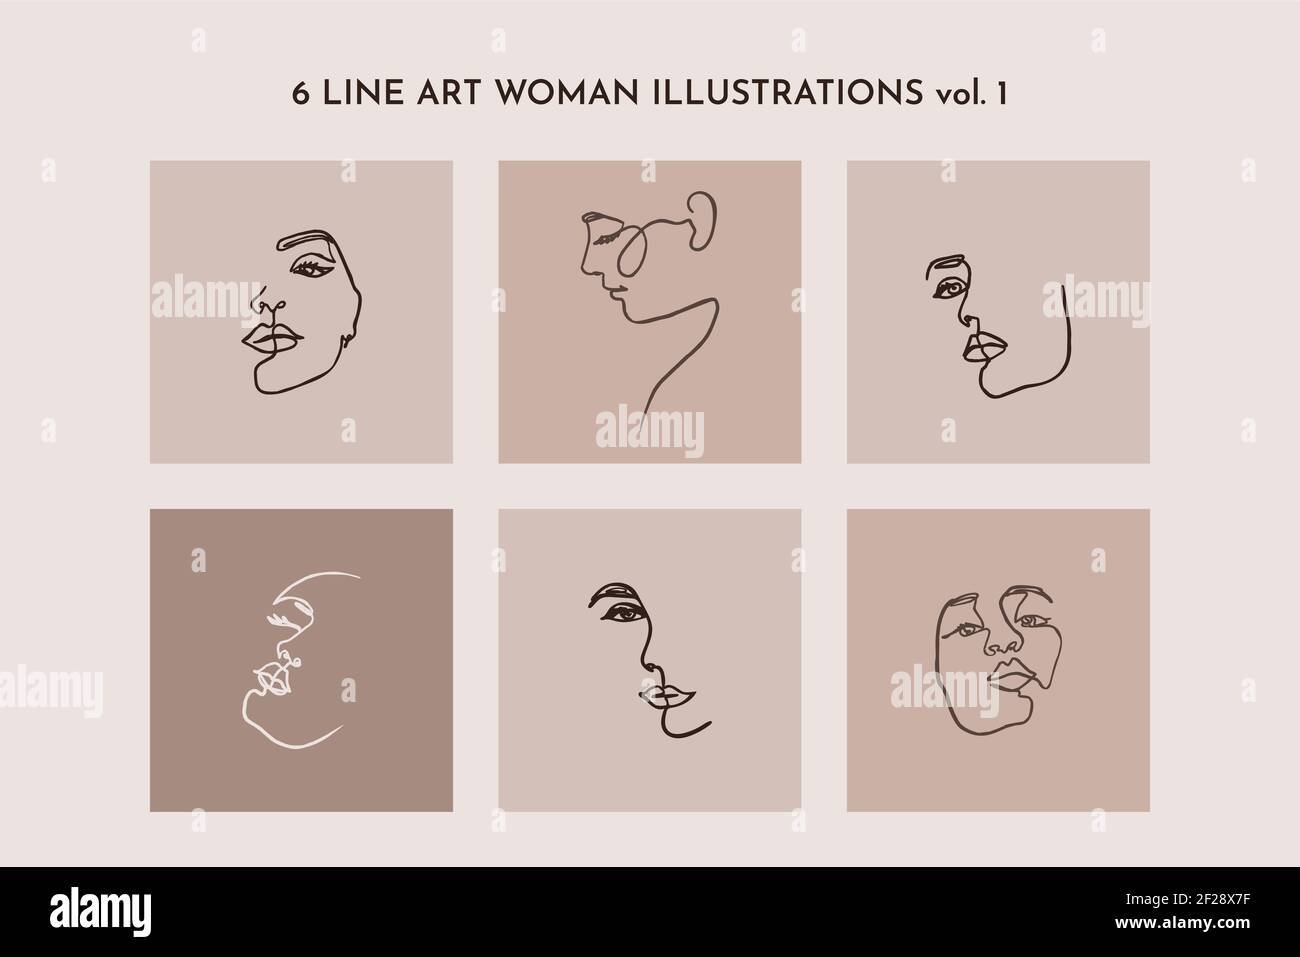 Eine Linie Zeichnung des Gesichts der Set-Frau. Kontinuierliche Linie Porträt eines Mädchens in einem modernen minimalistischen Stil. Vektor Stock Vektor